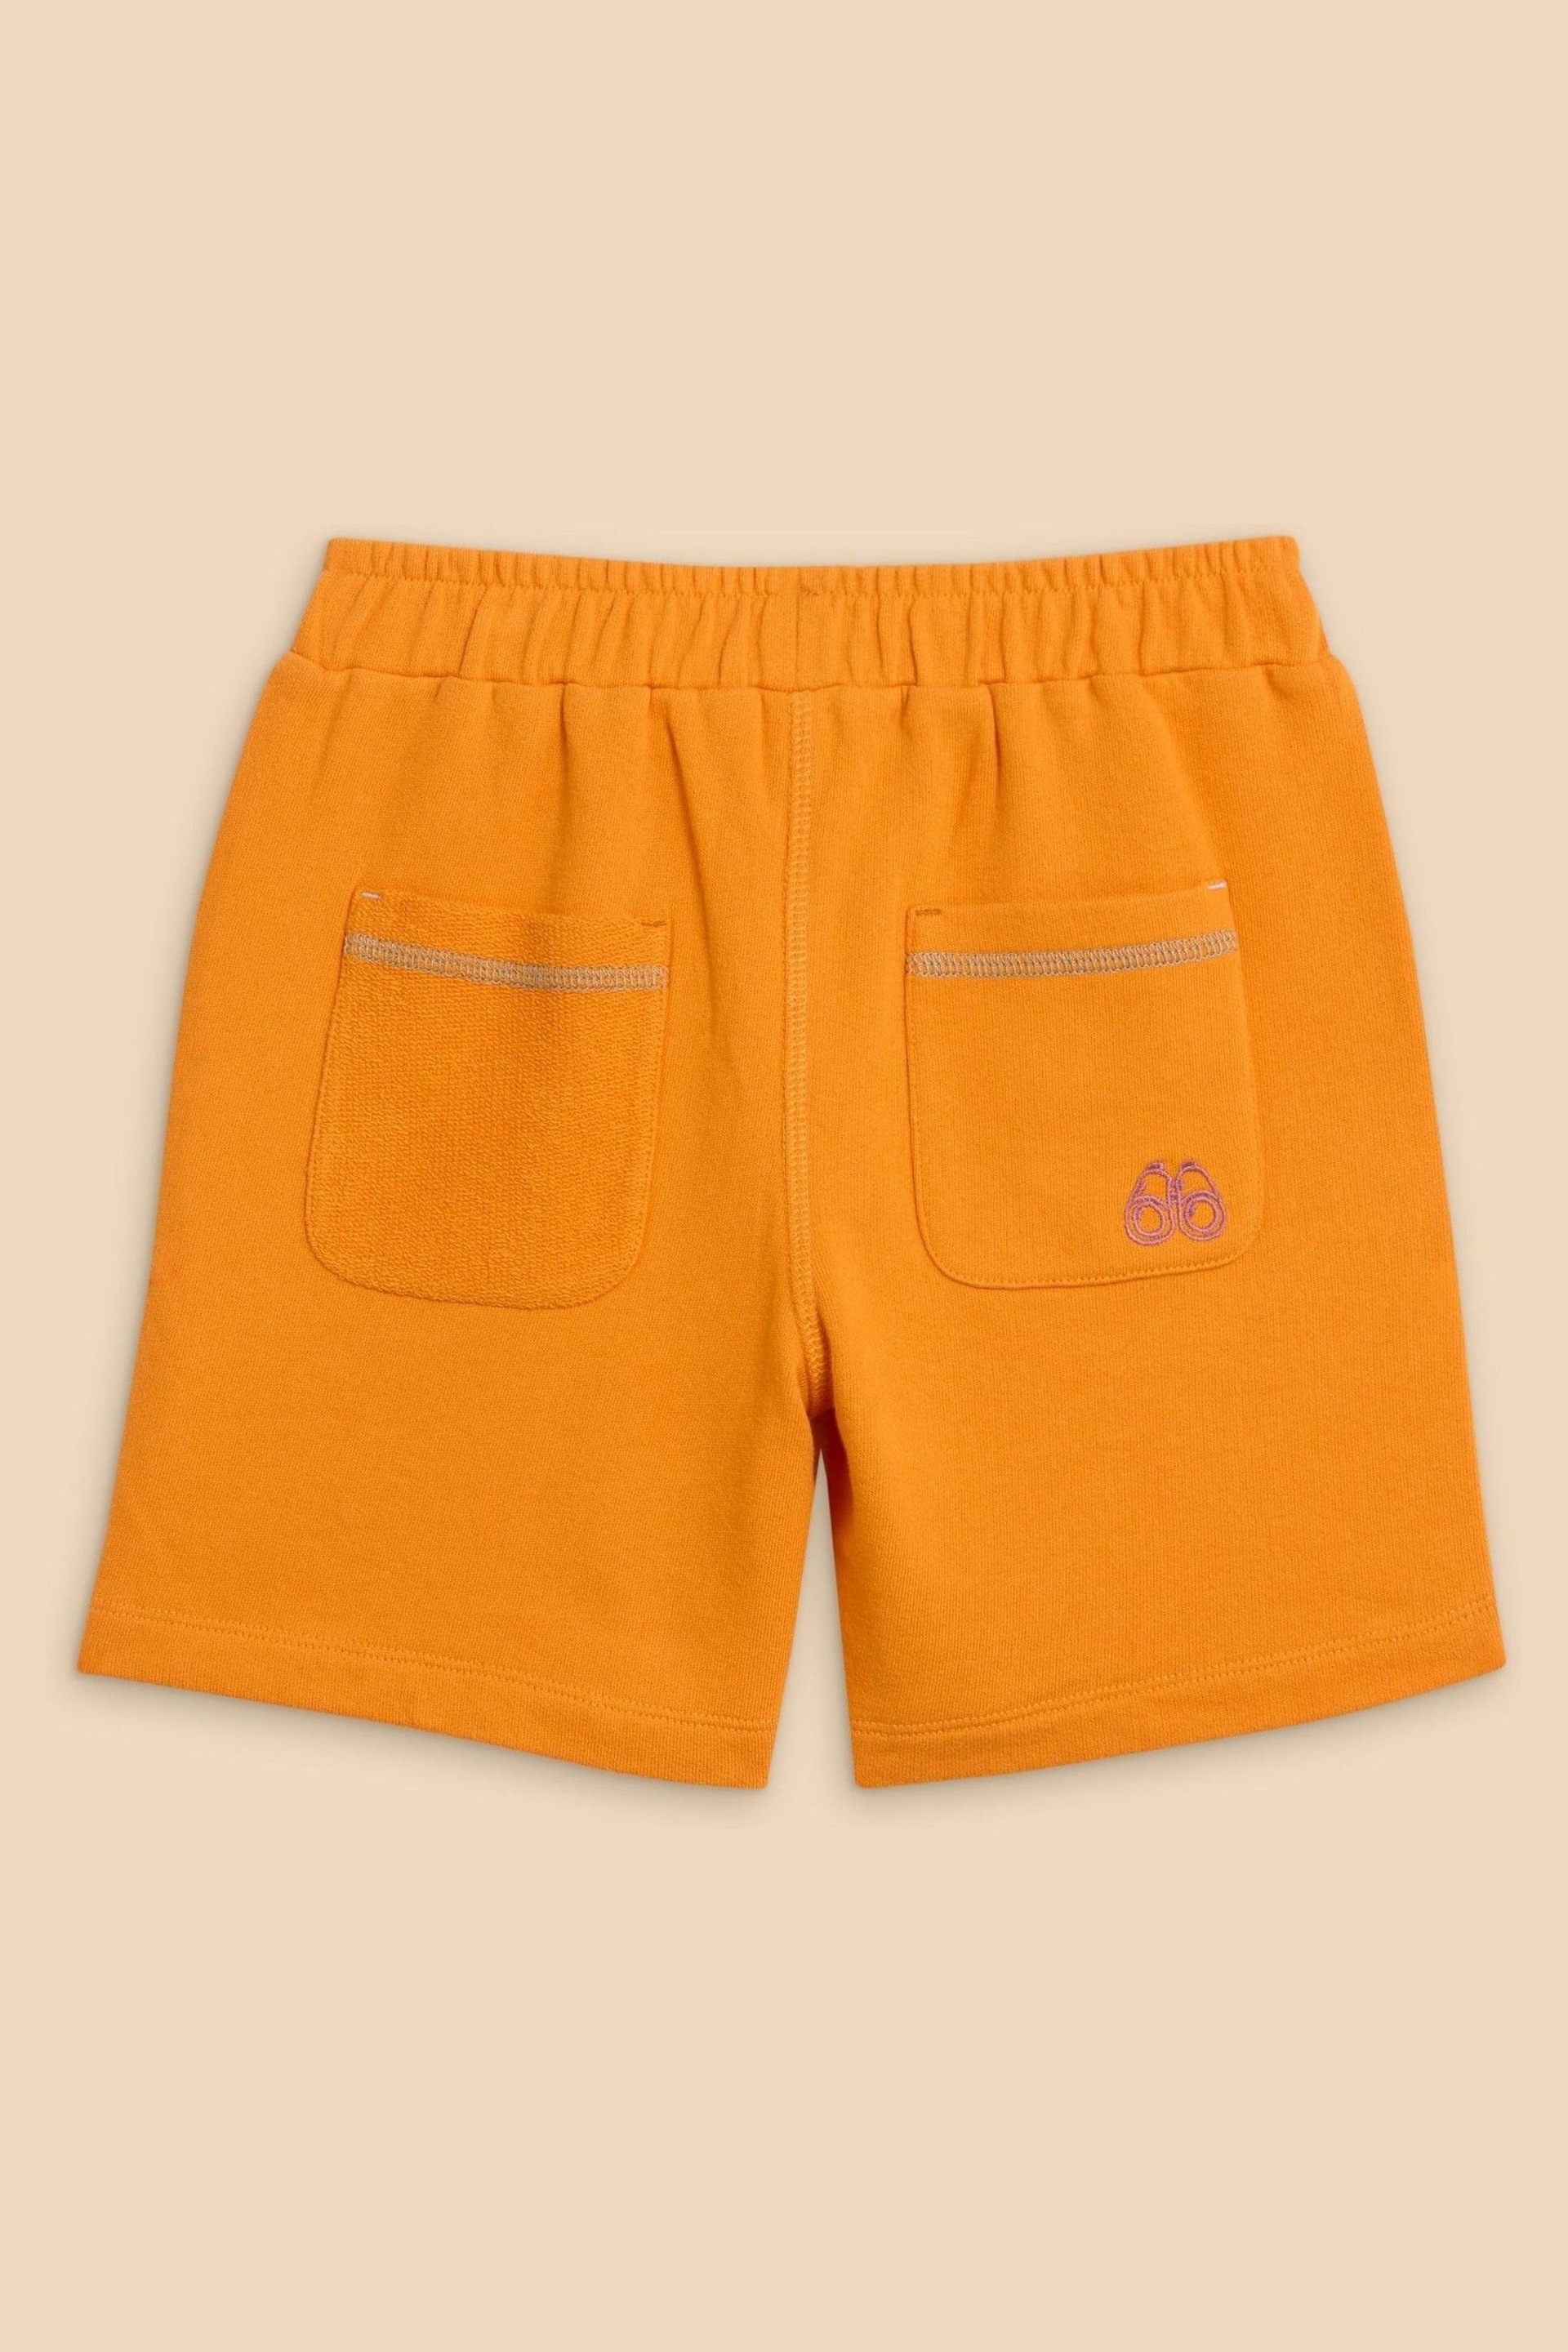 White Stuff Orange Jersey Shorts - Image 2 of 3